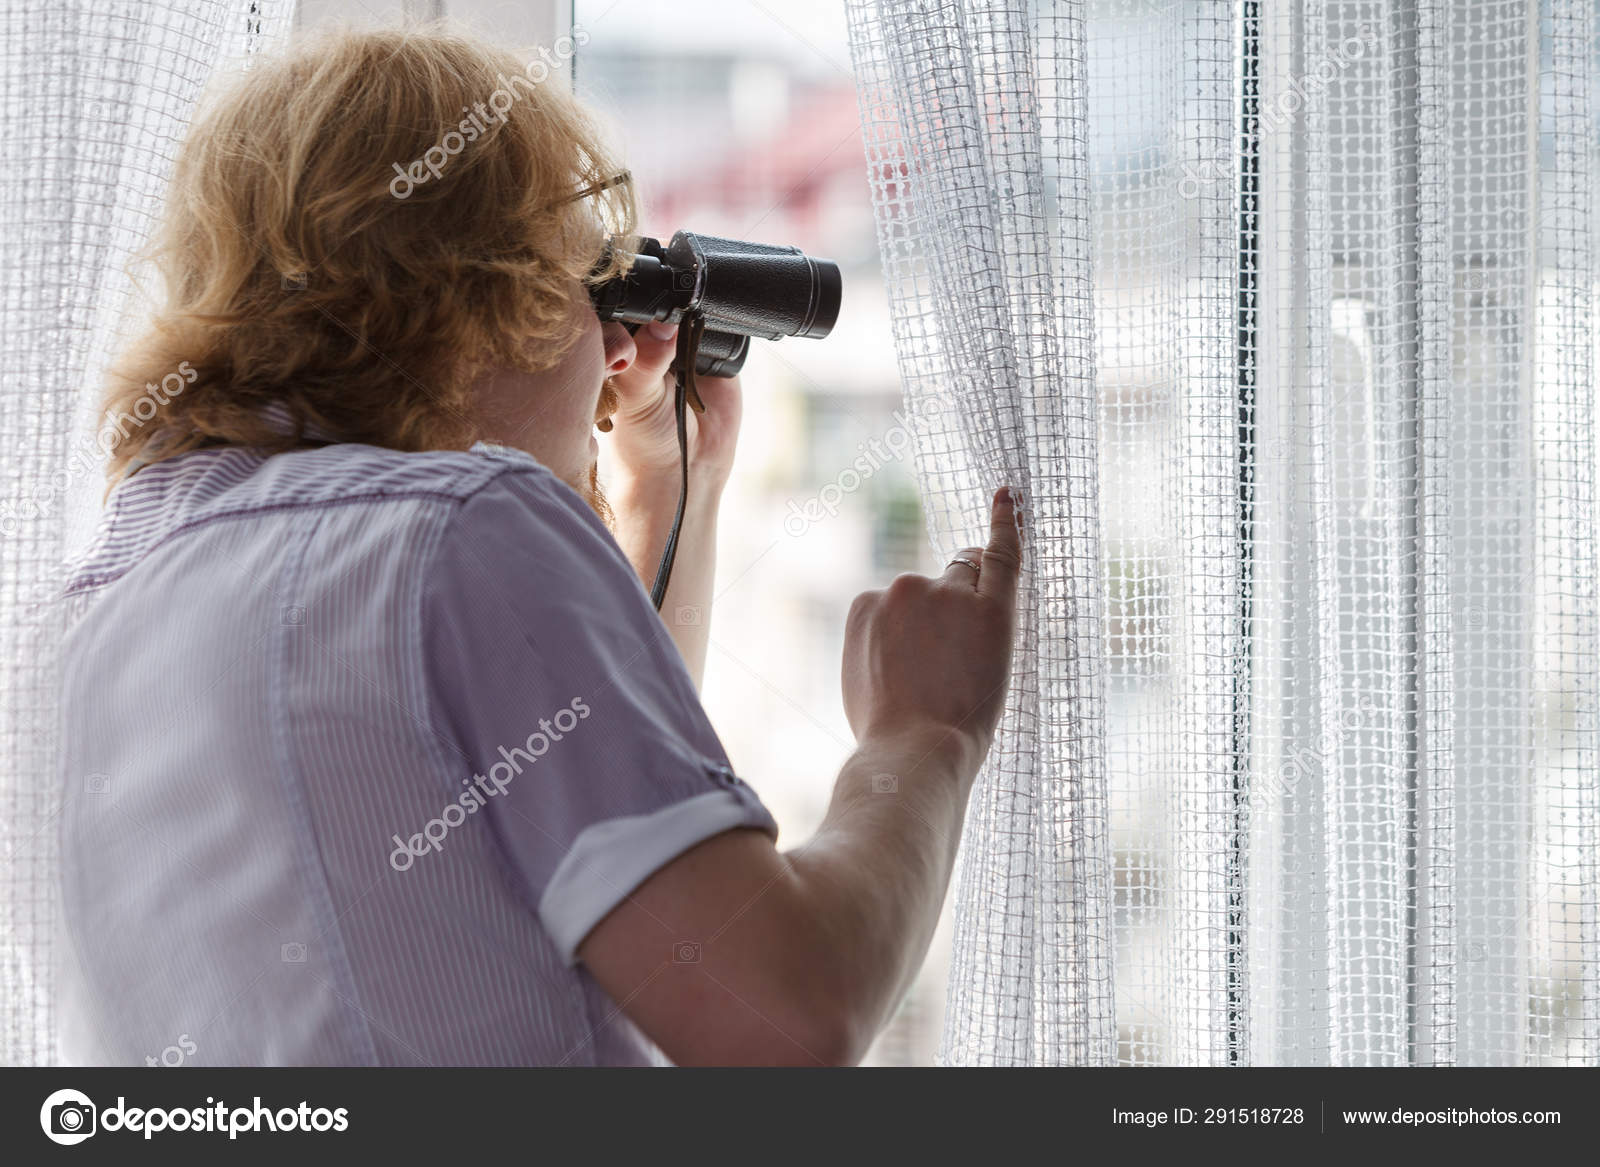 Spying on neighbors